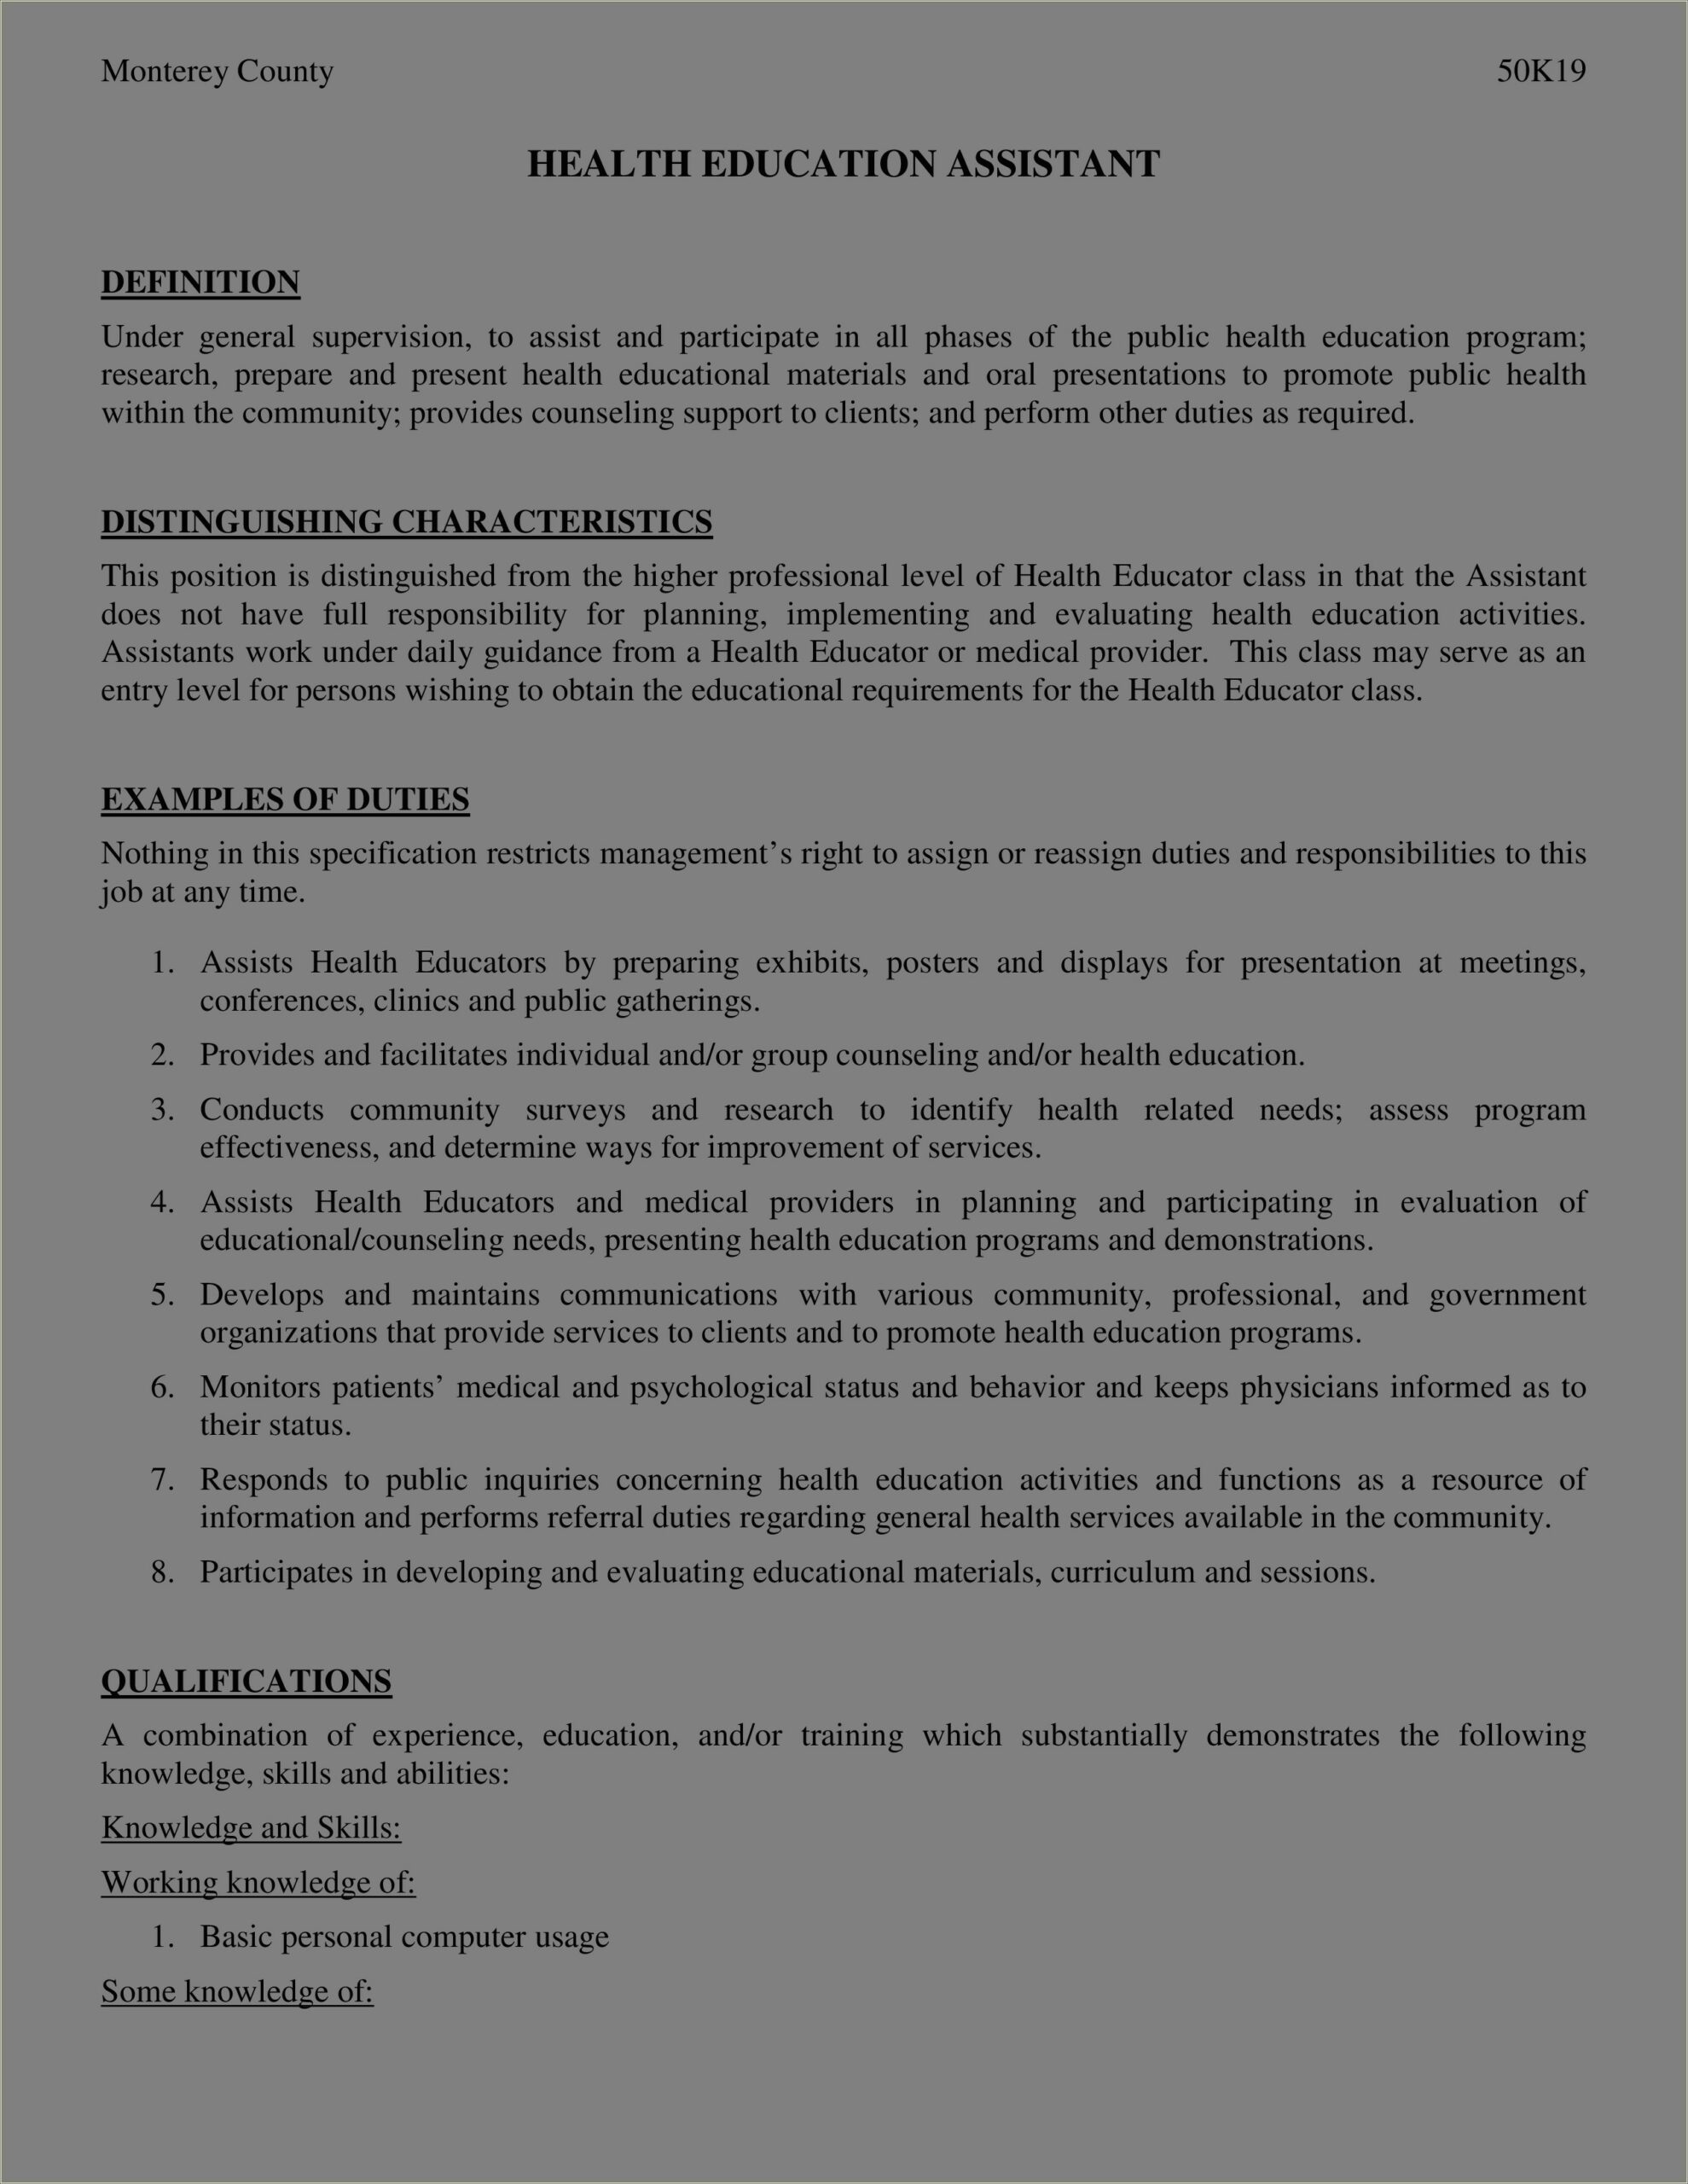 Educational Assistant Job Description For Resume